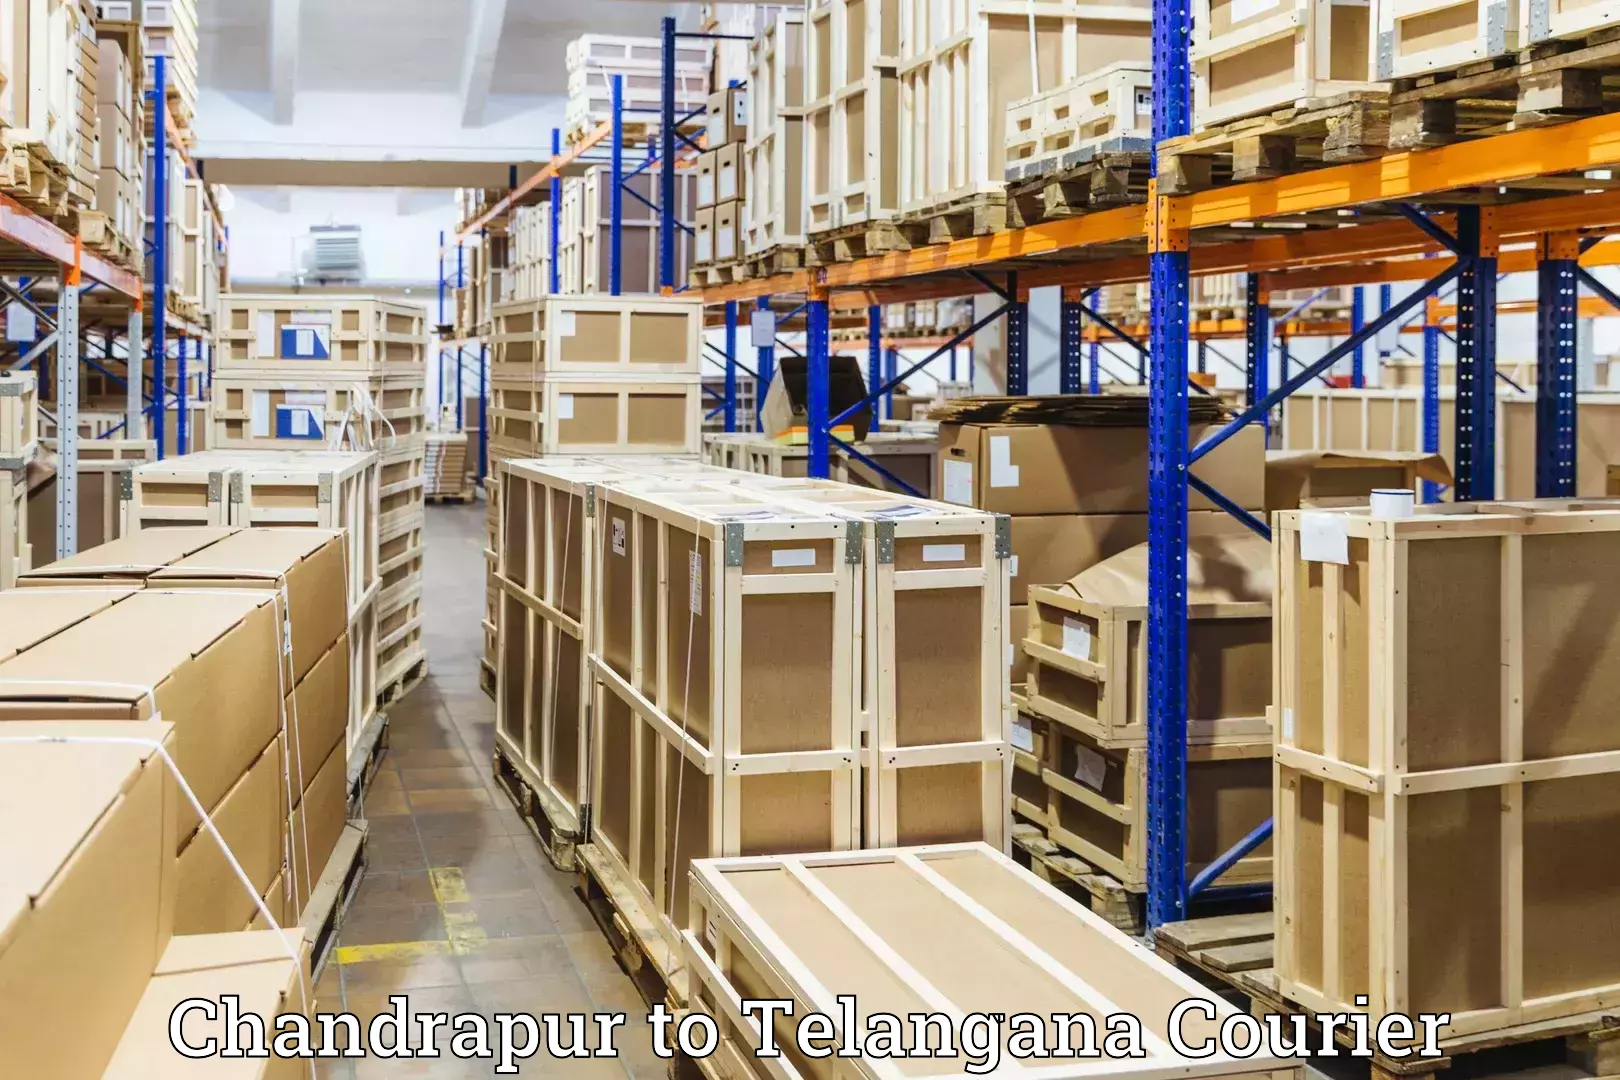 Luggage shipping consultation Chandrapur to Sadashivpet